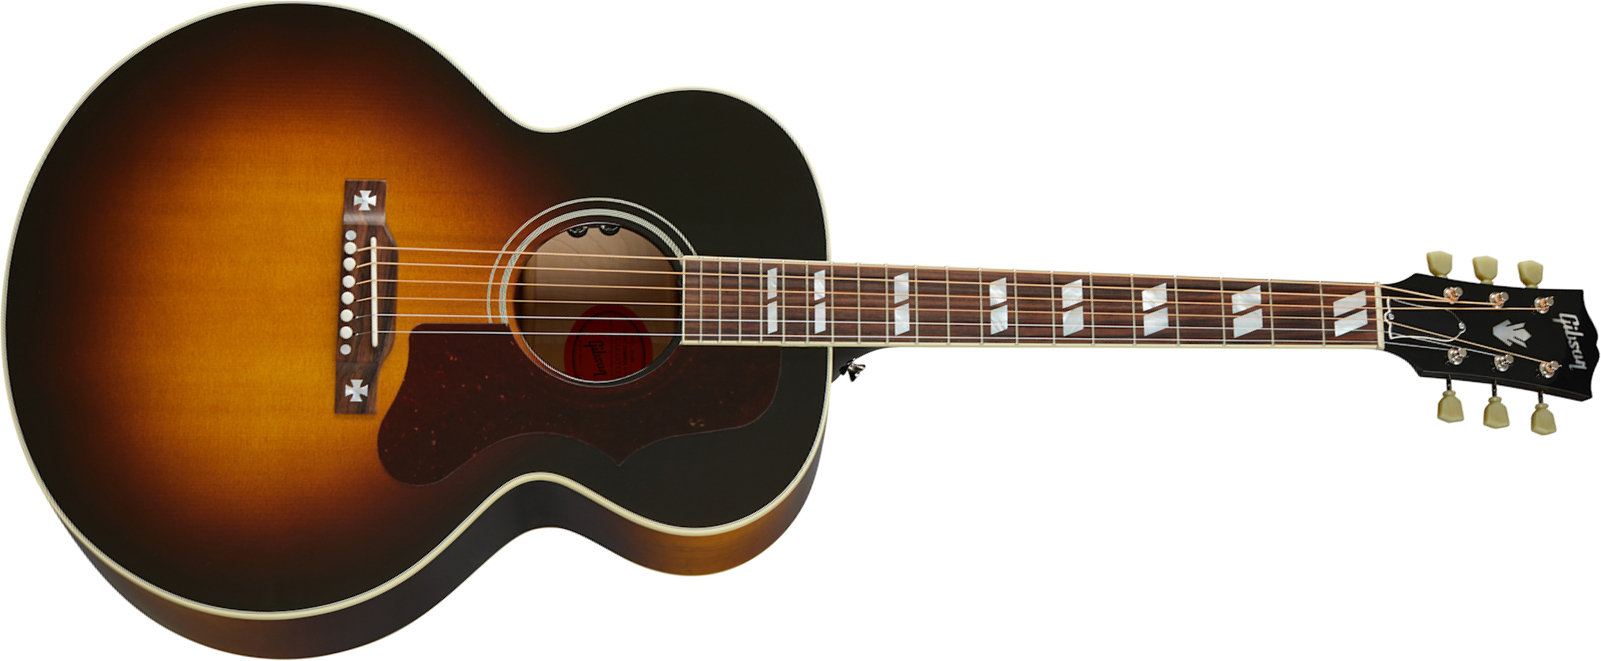 Gibson J-185 Original 2020 Jumbo Epicea Erable Rw - Vintage Sunburst - Guitare Electro Acoustique - Main picture